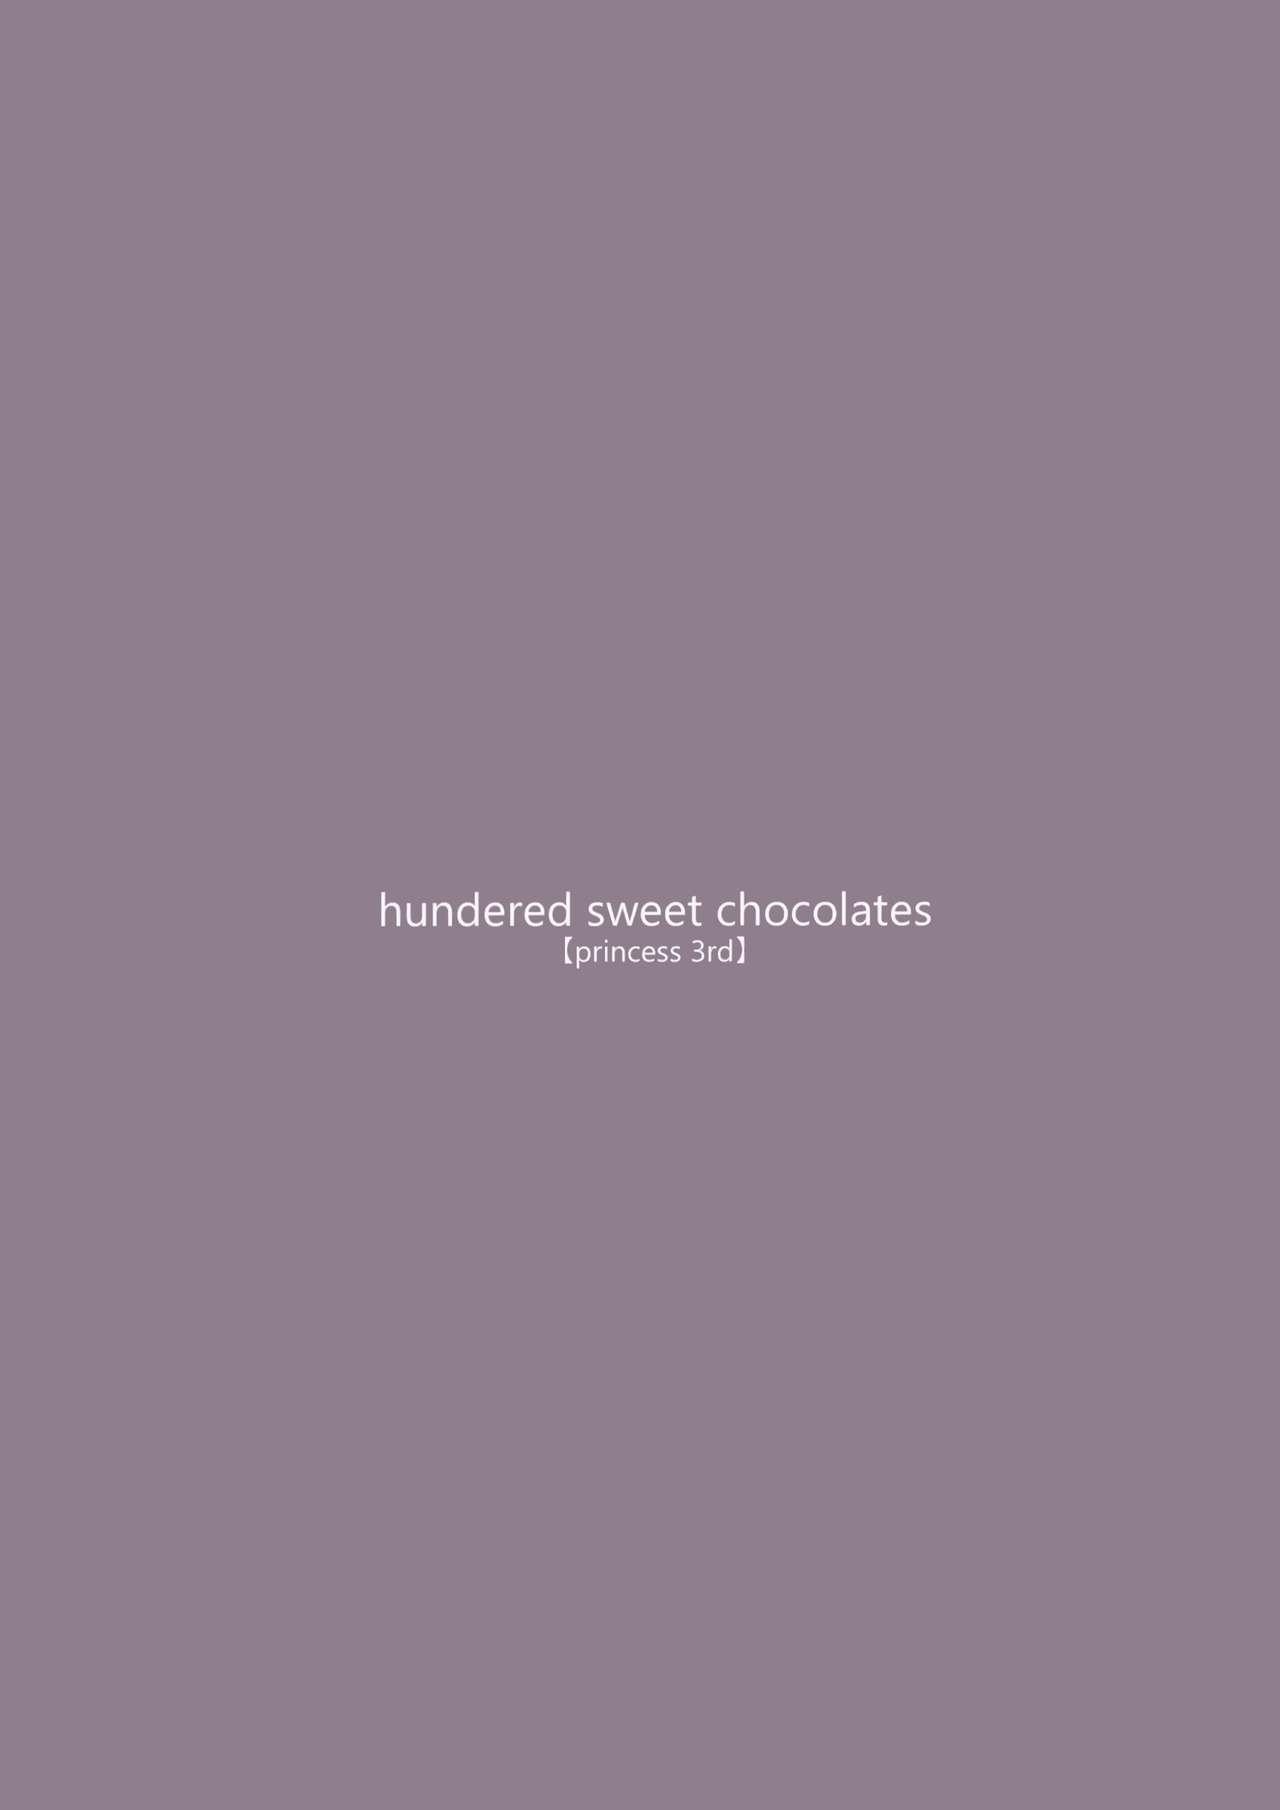 hundred sweet chocolates 16